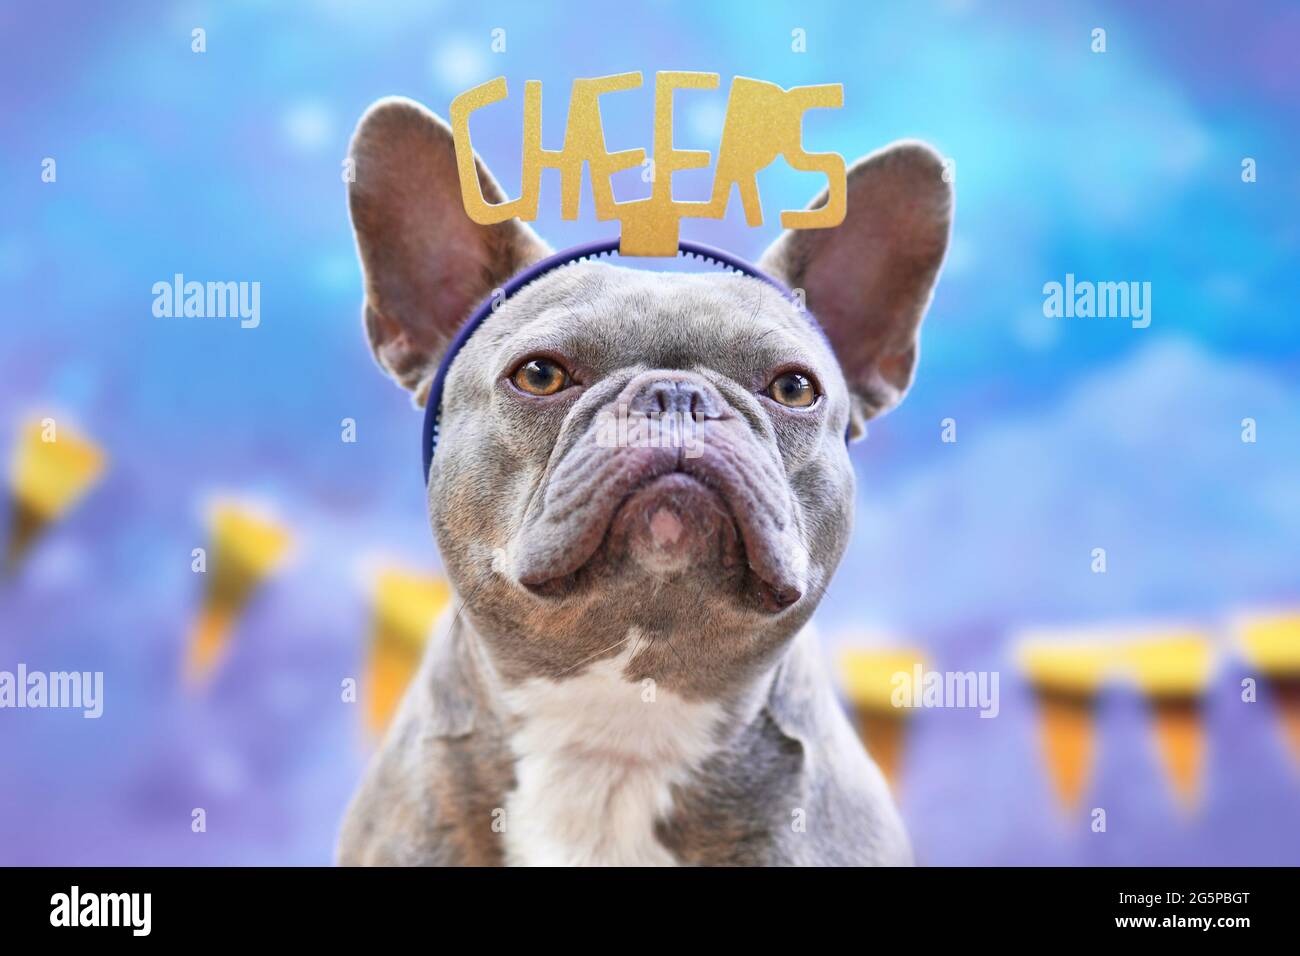 Festa francese Bulldog cane con archetto con le parole 'Cheers' di fronte alla ghirlanda d'oro su sfondo blu Foto Stock